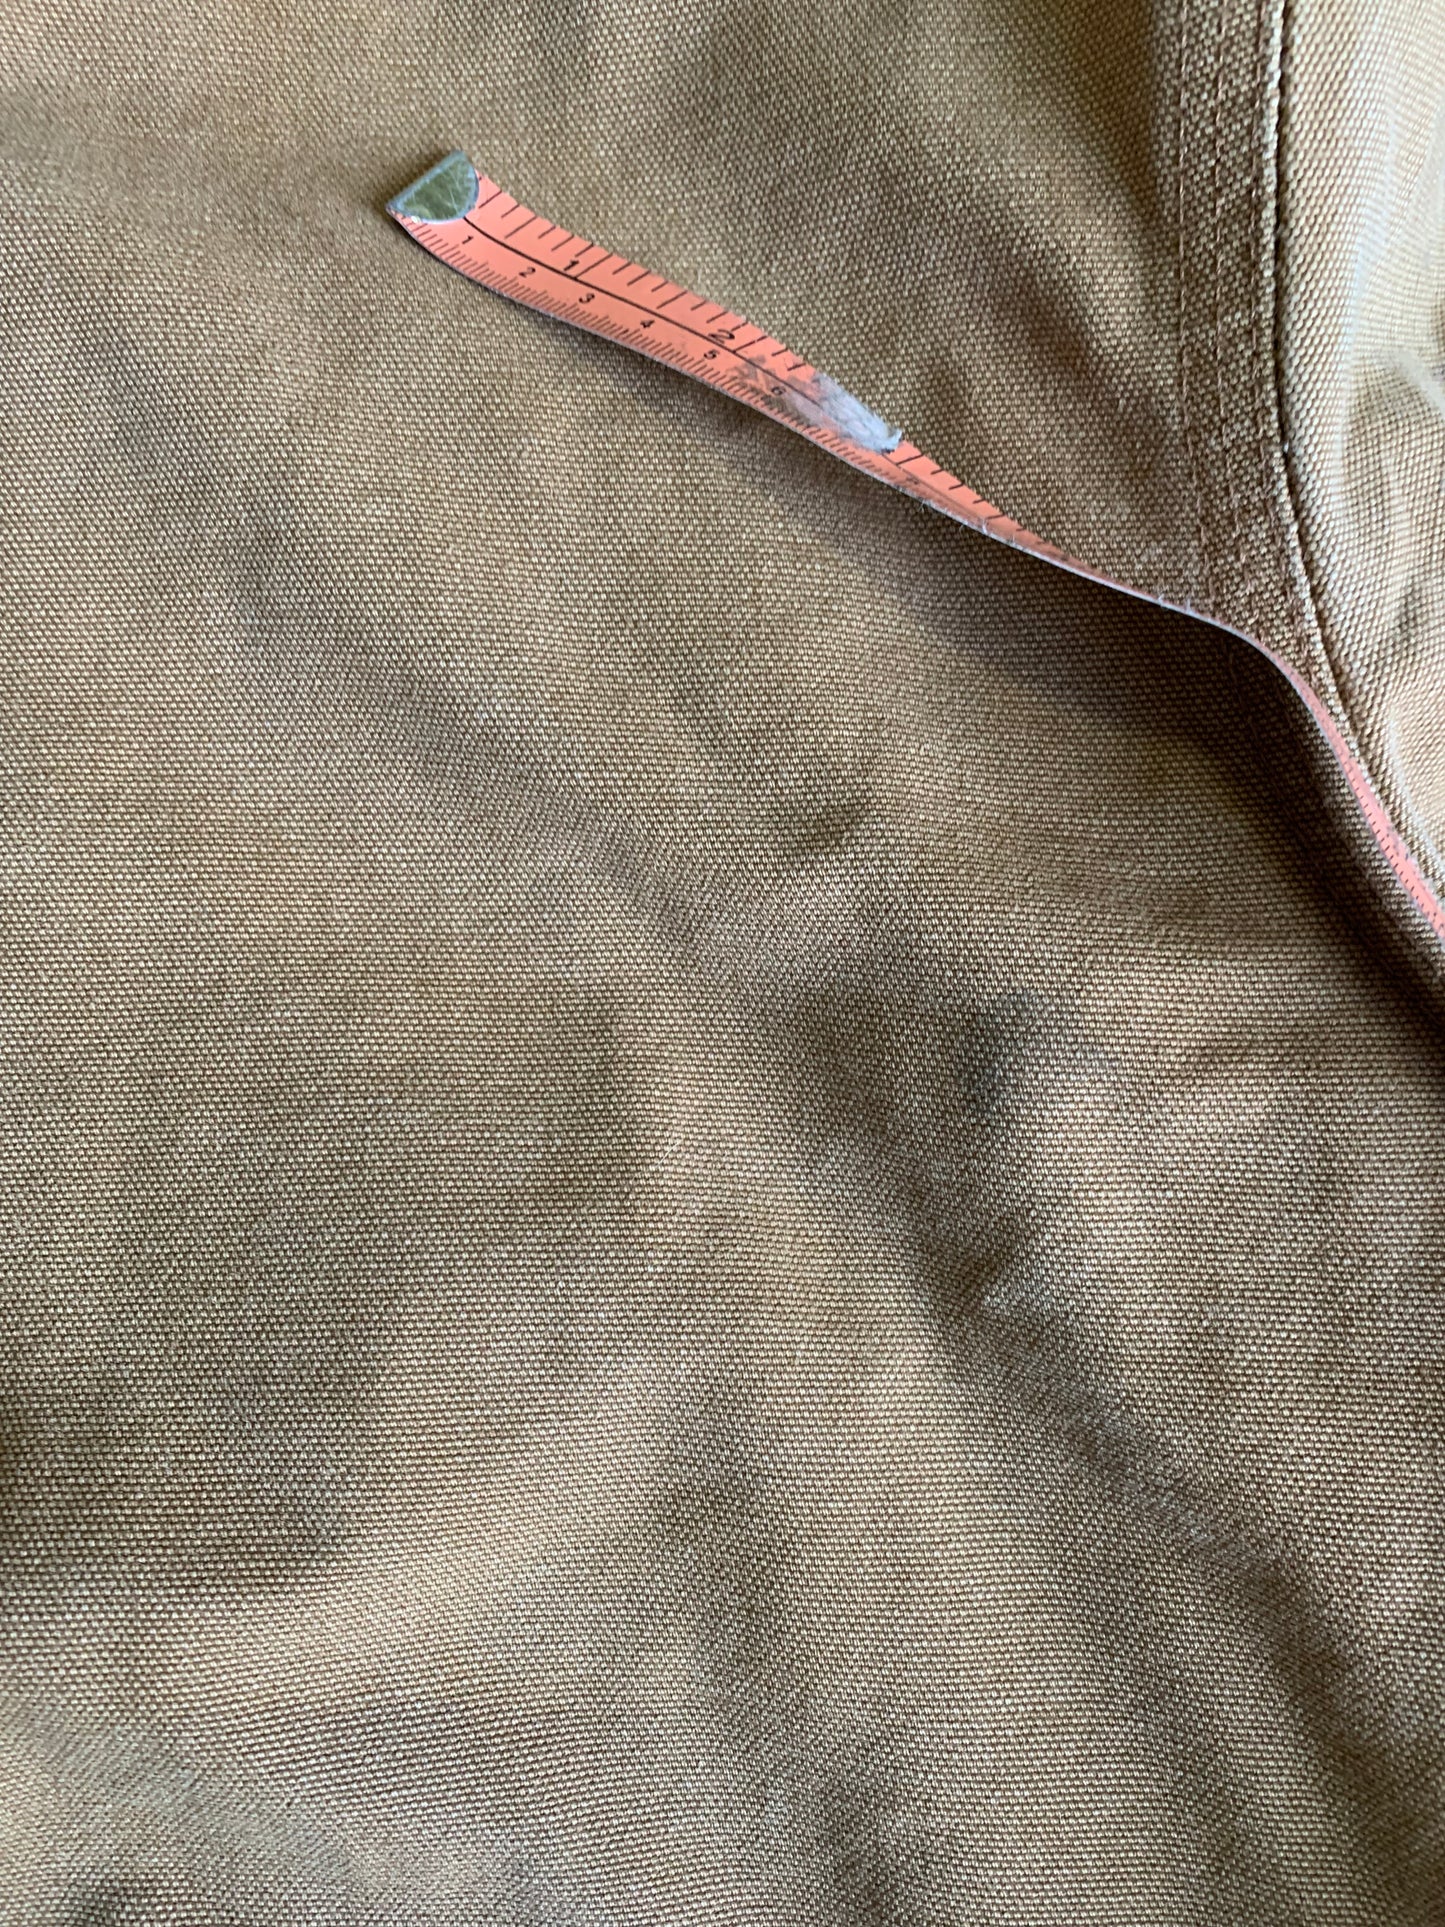 (XL) Vintage Carhartt Hooded Jacket